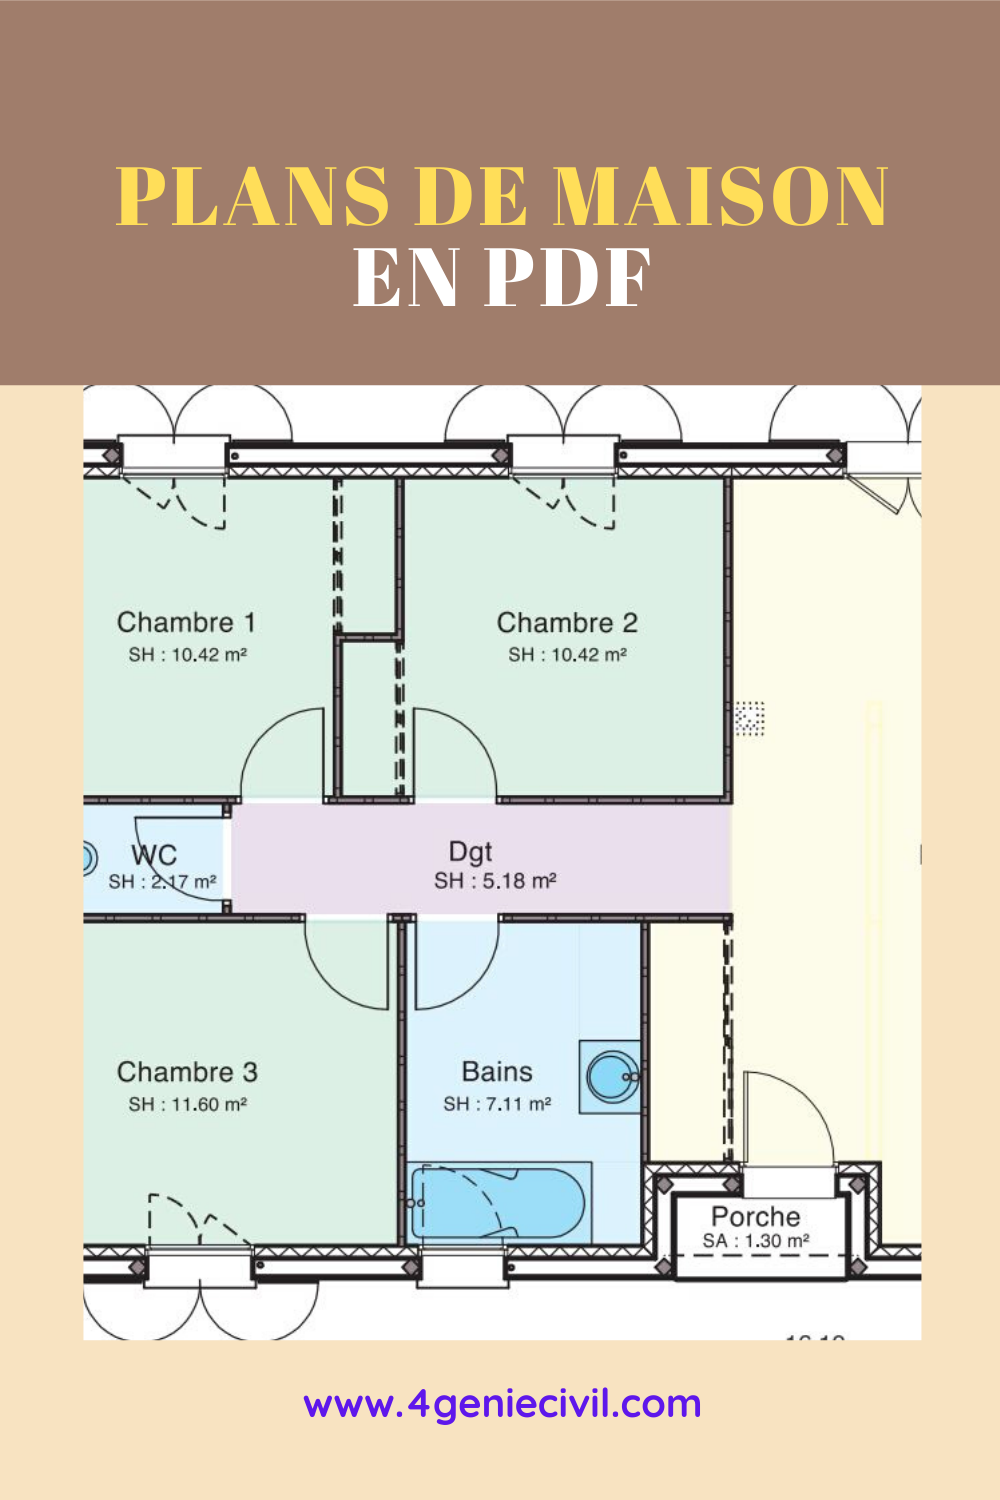 Plan de masion pdf - des exemples concrets